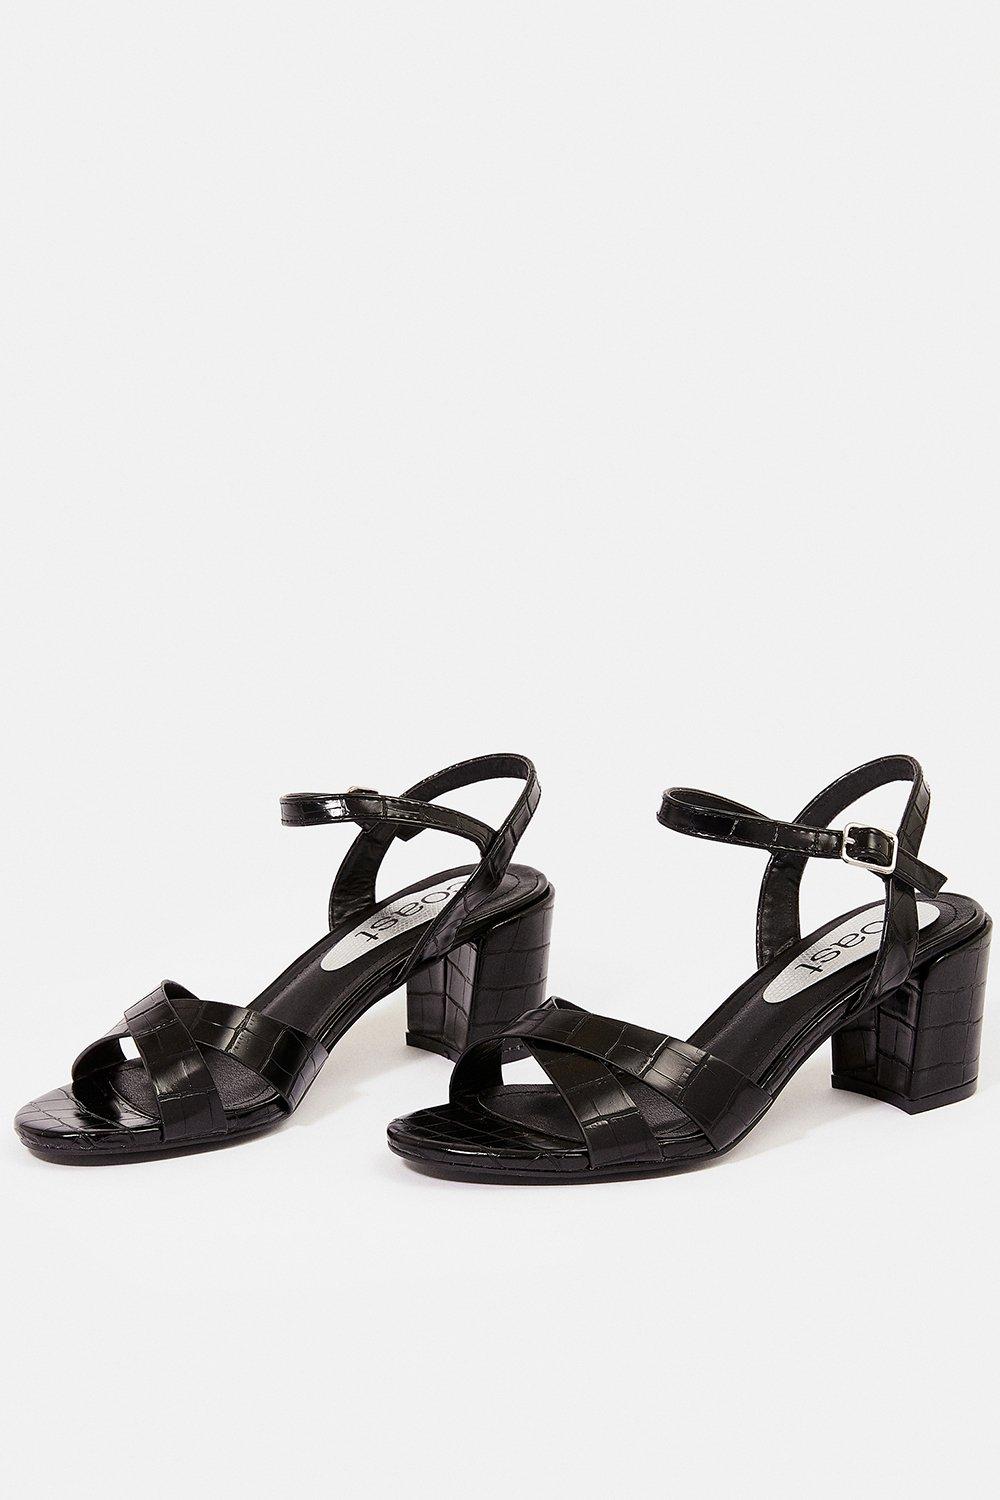 black croc block heels